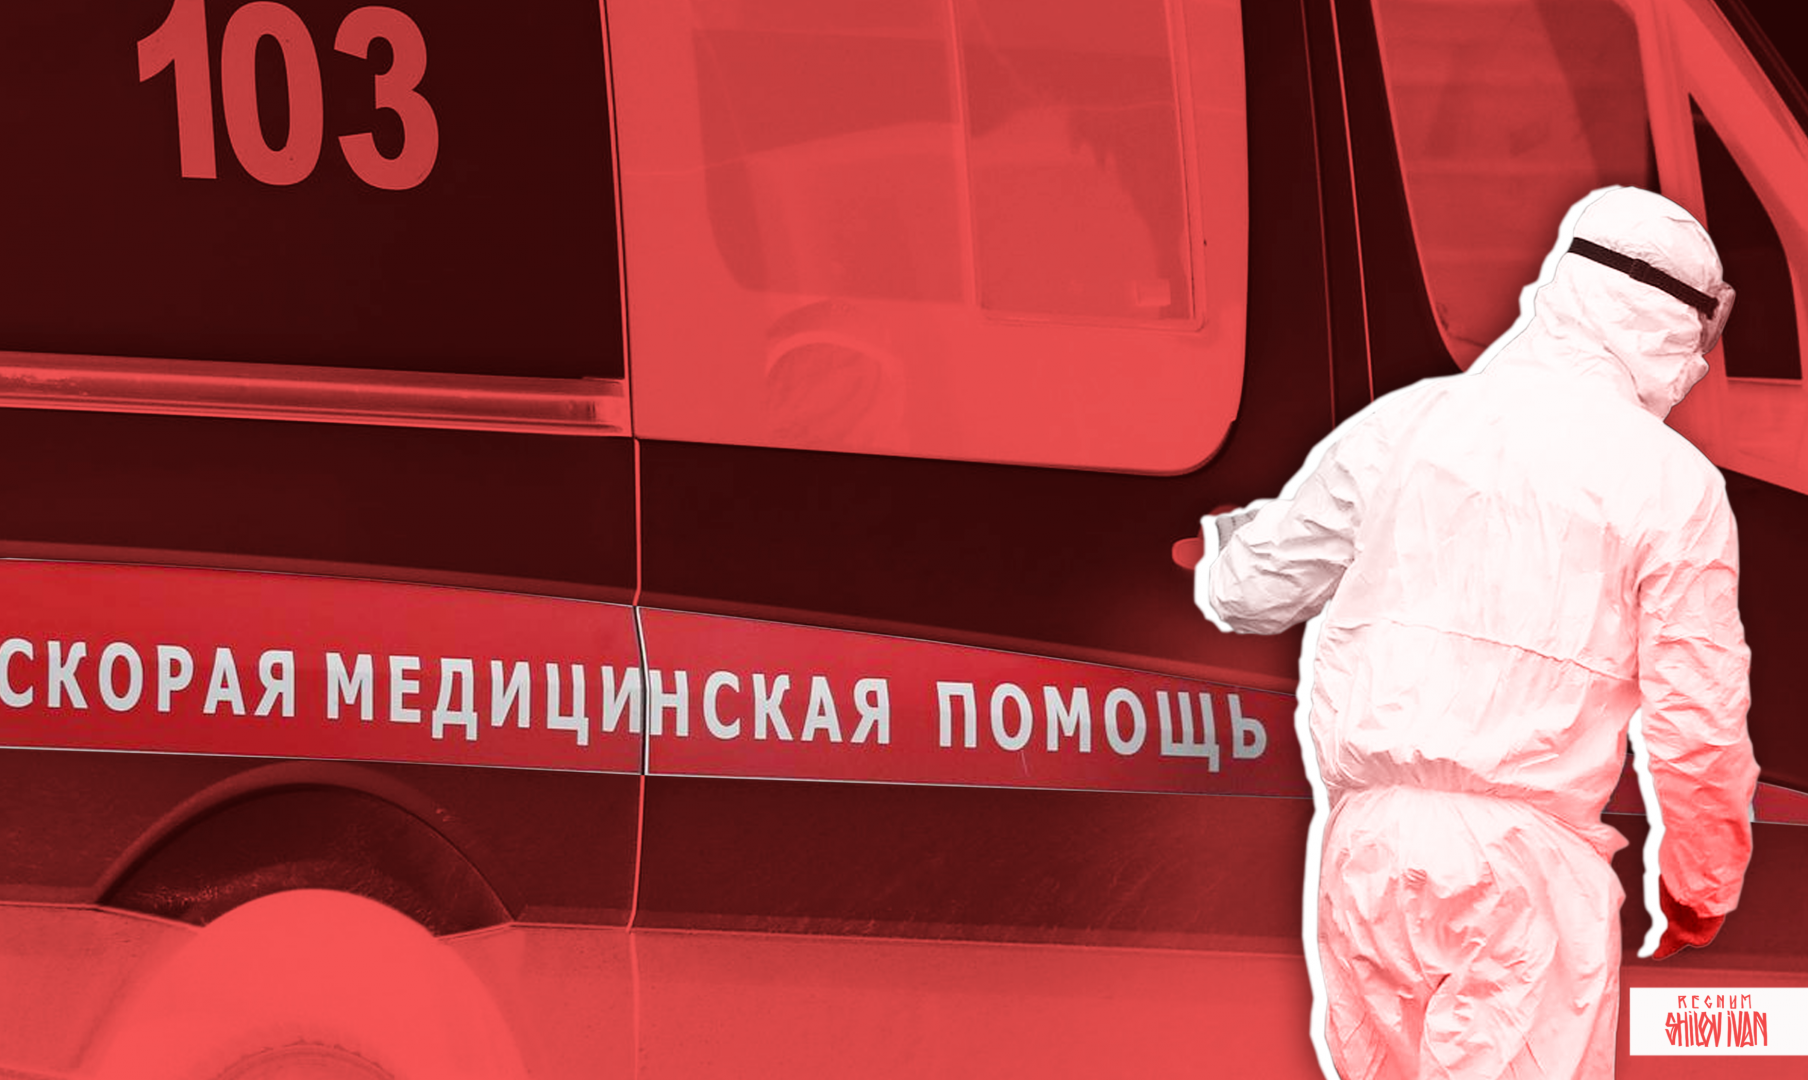 СМИ: житель Екатеринбурга умер после выписки из больницы